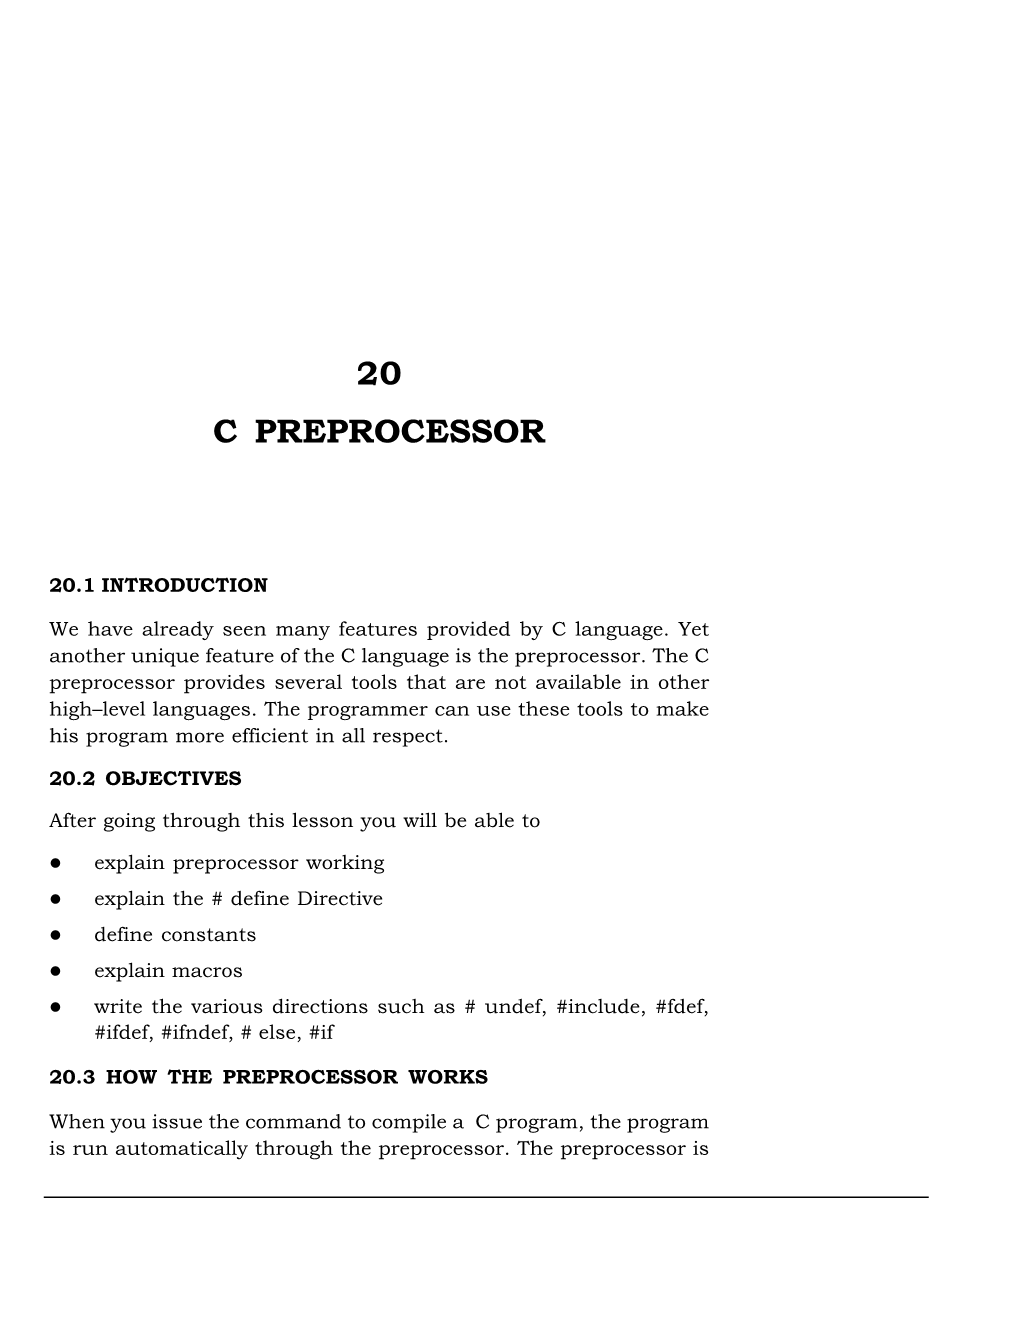 Lesson-20 C Preprocessor